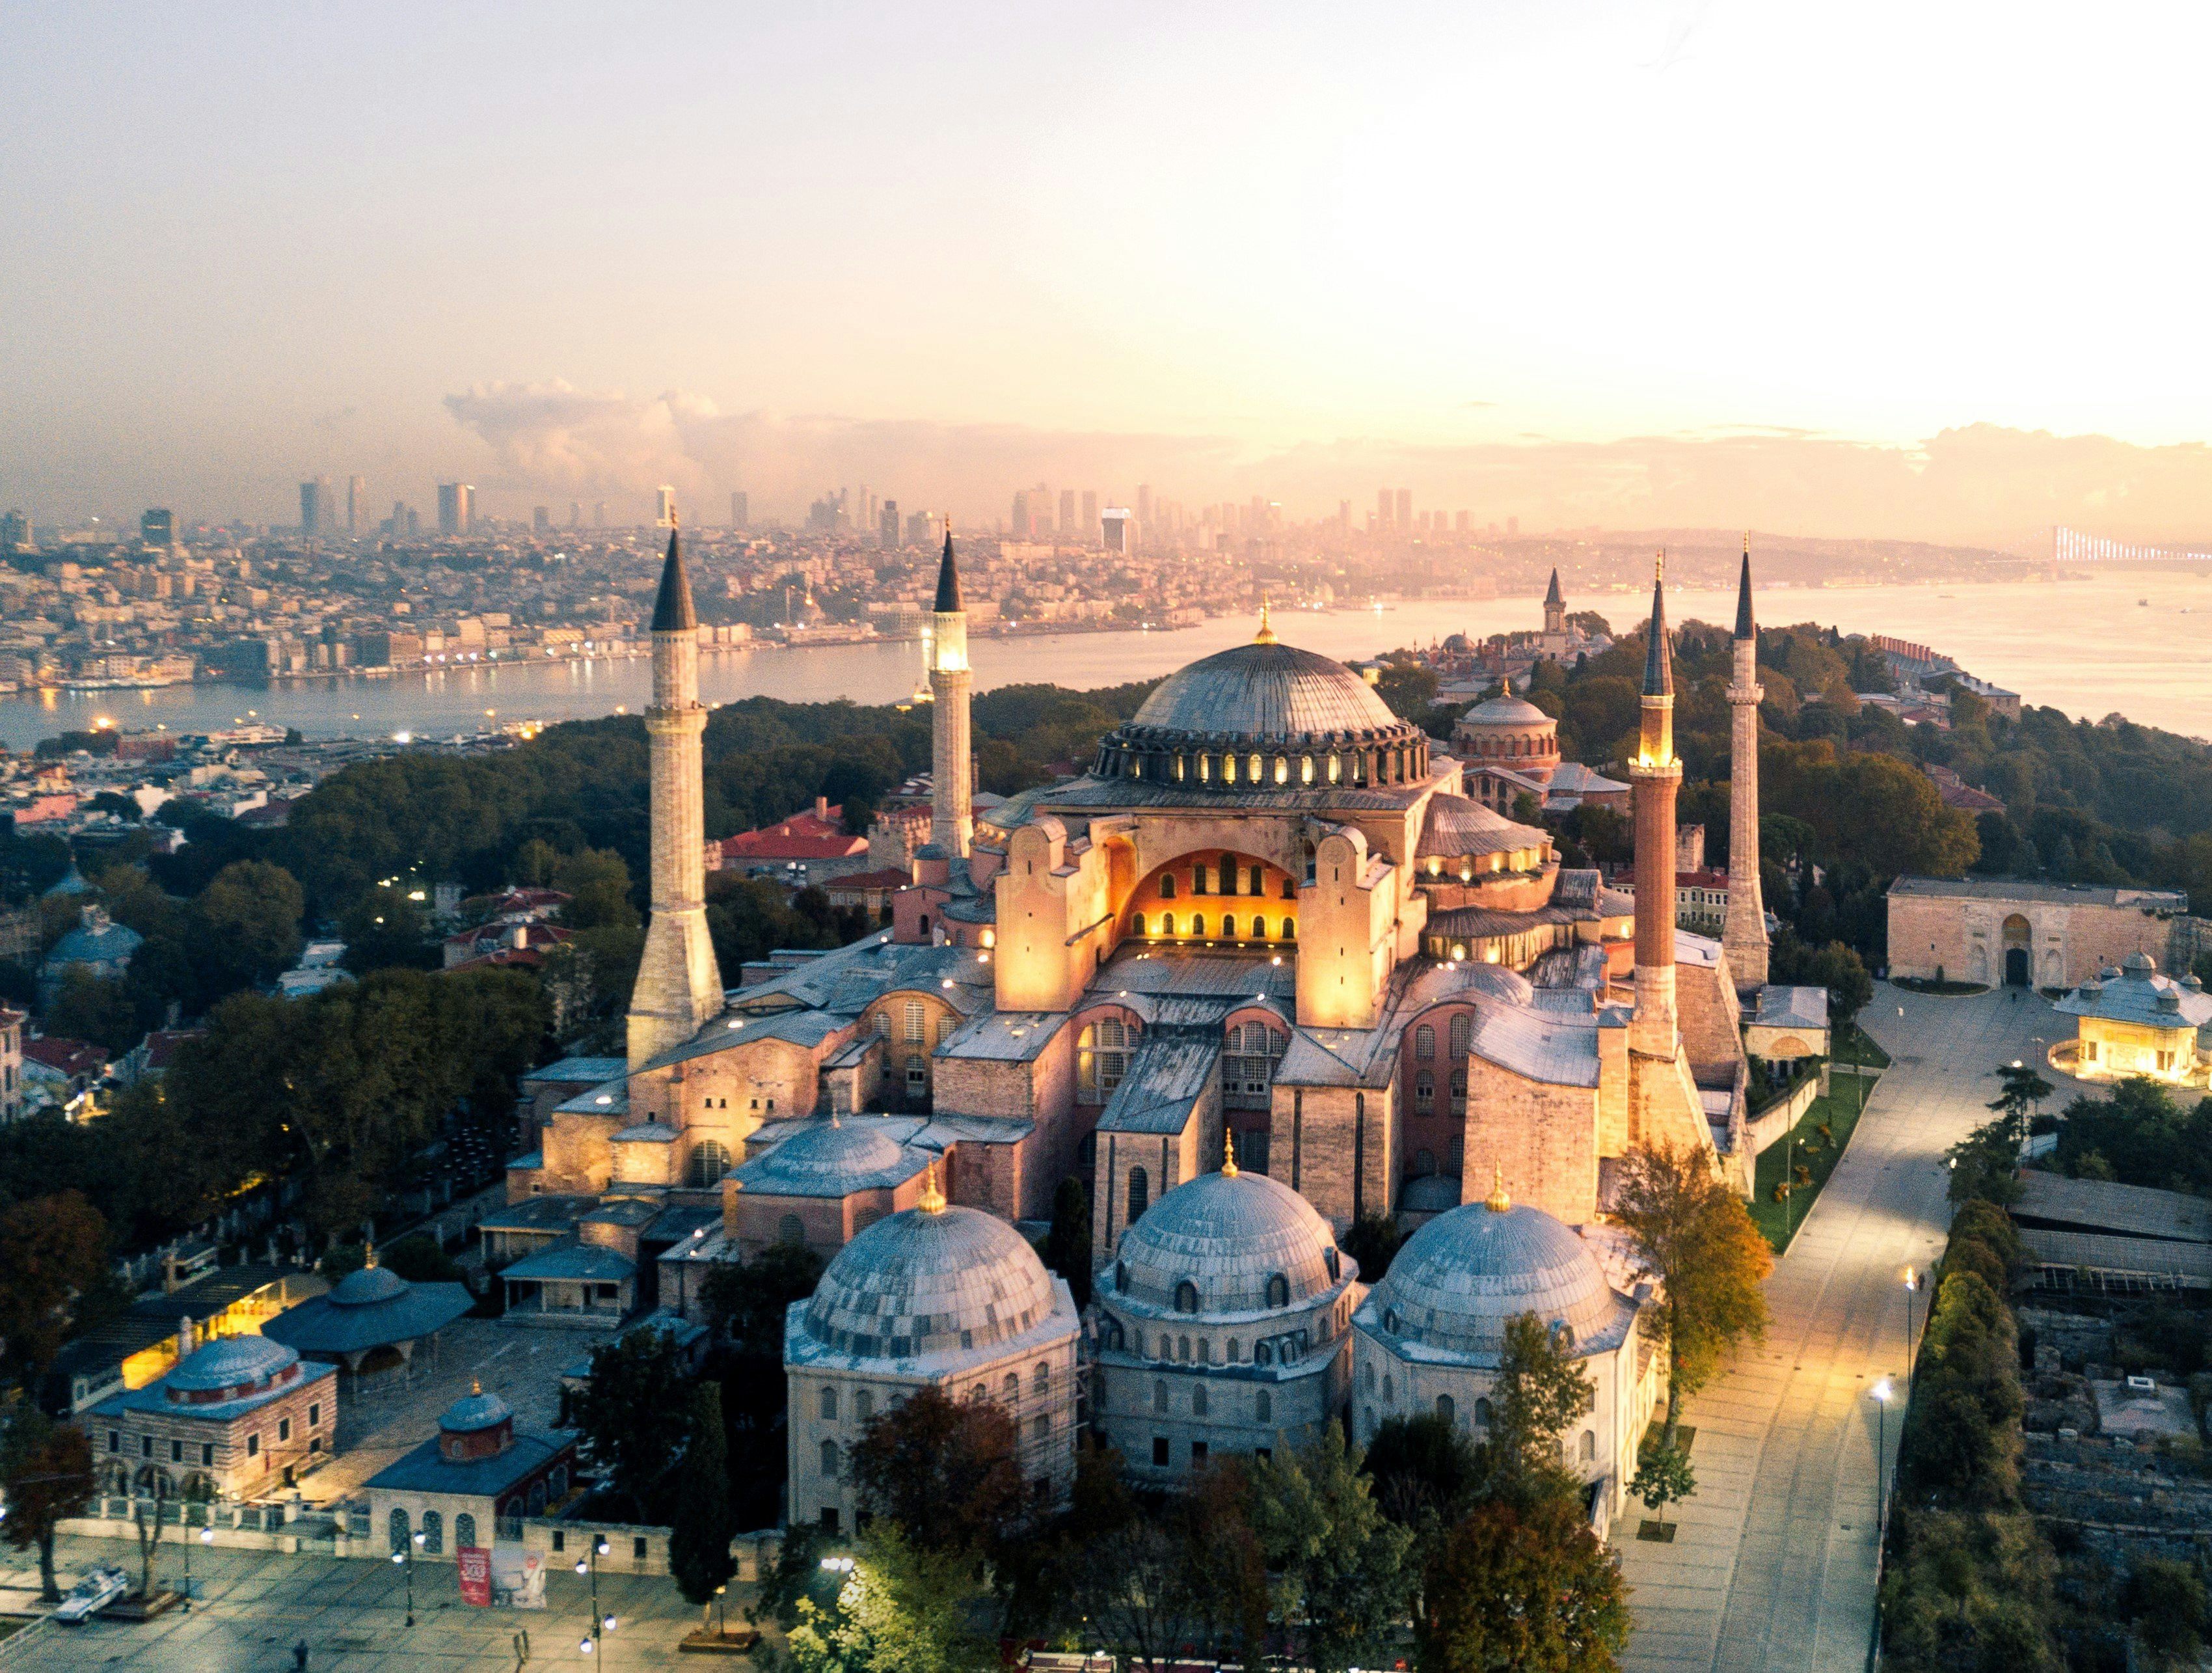 En flygvy över Hagia Sofia i Istanbul, en före detta kyrka och moské och nu museum.  Byggnaden är stor och vit med fyra höga minareter i varje hörn och ett välvt tak.  Bakom monumentet syns Istanbuls skyline, inklusive Bosporenfloden som rinner genom dess centrum.